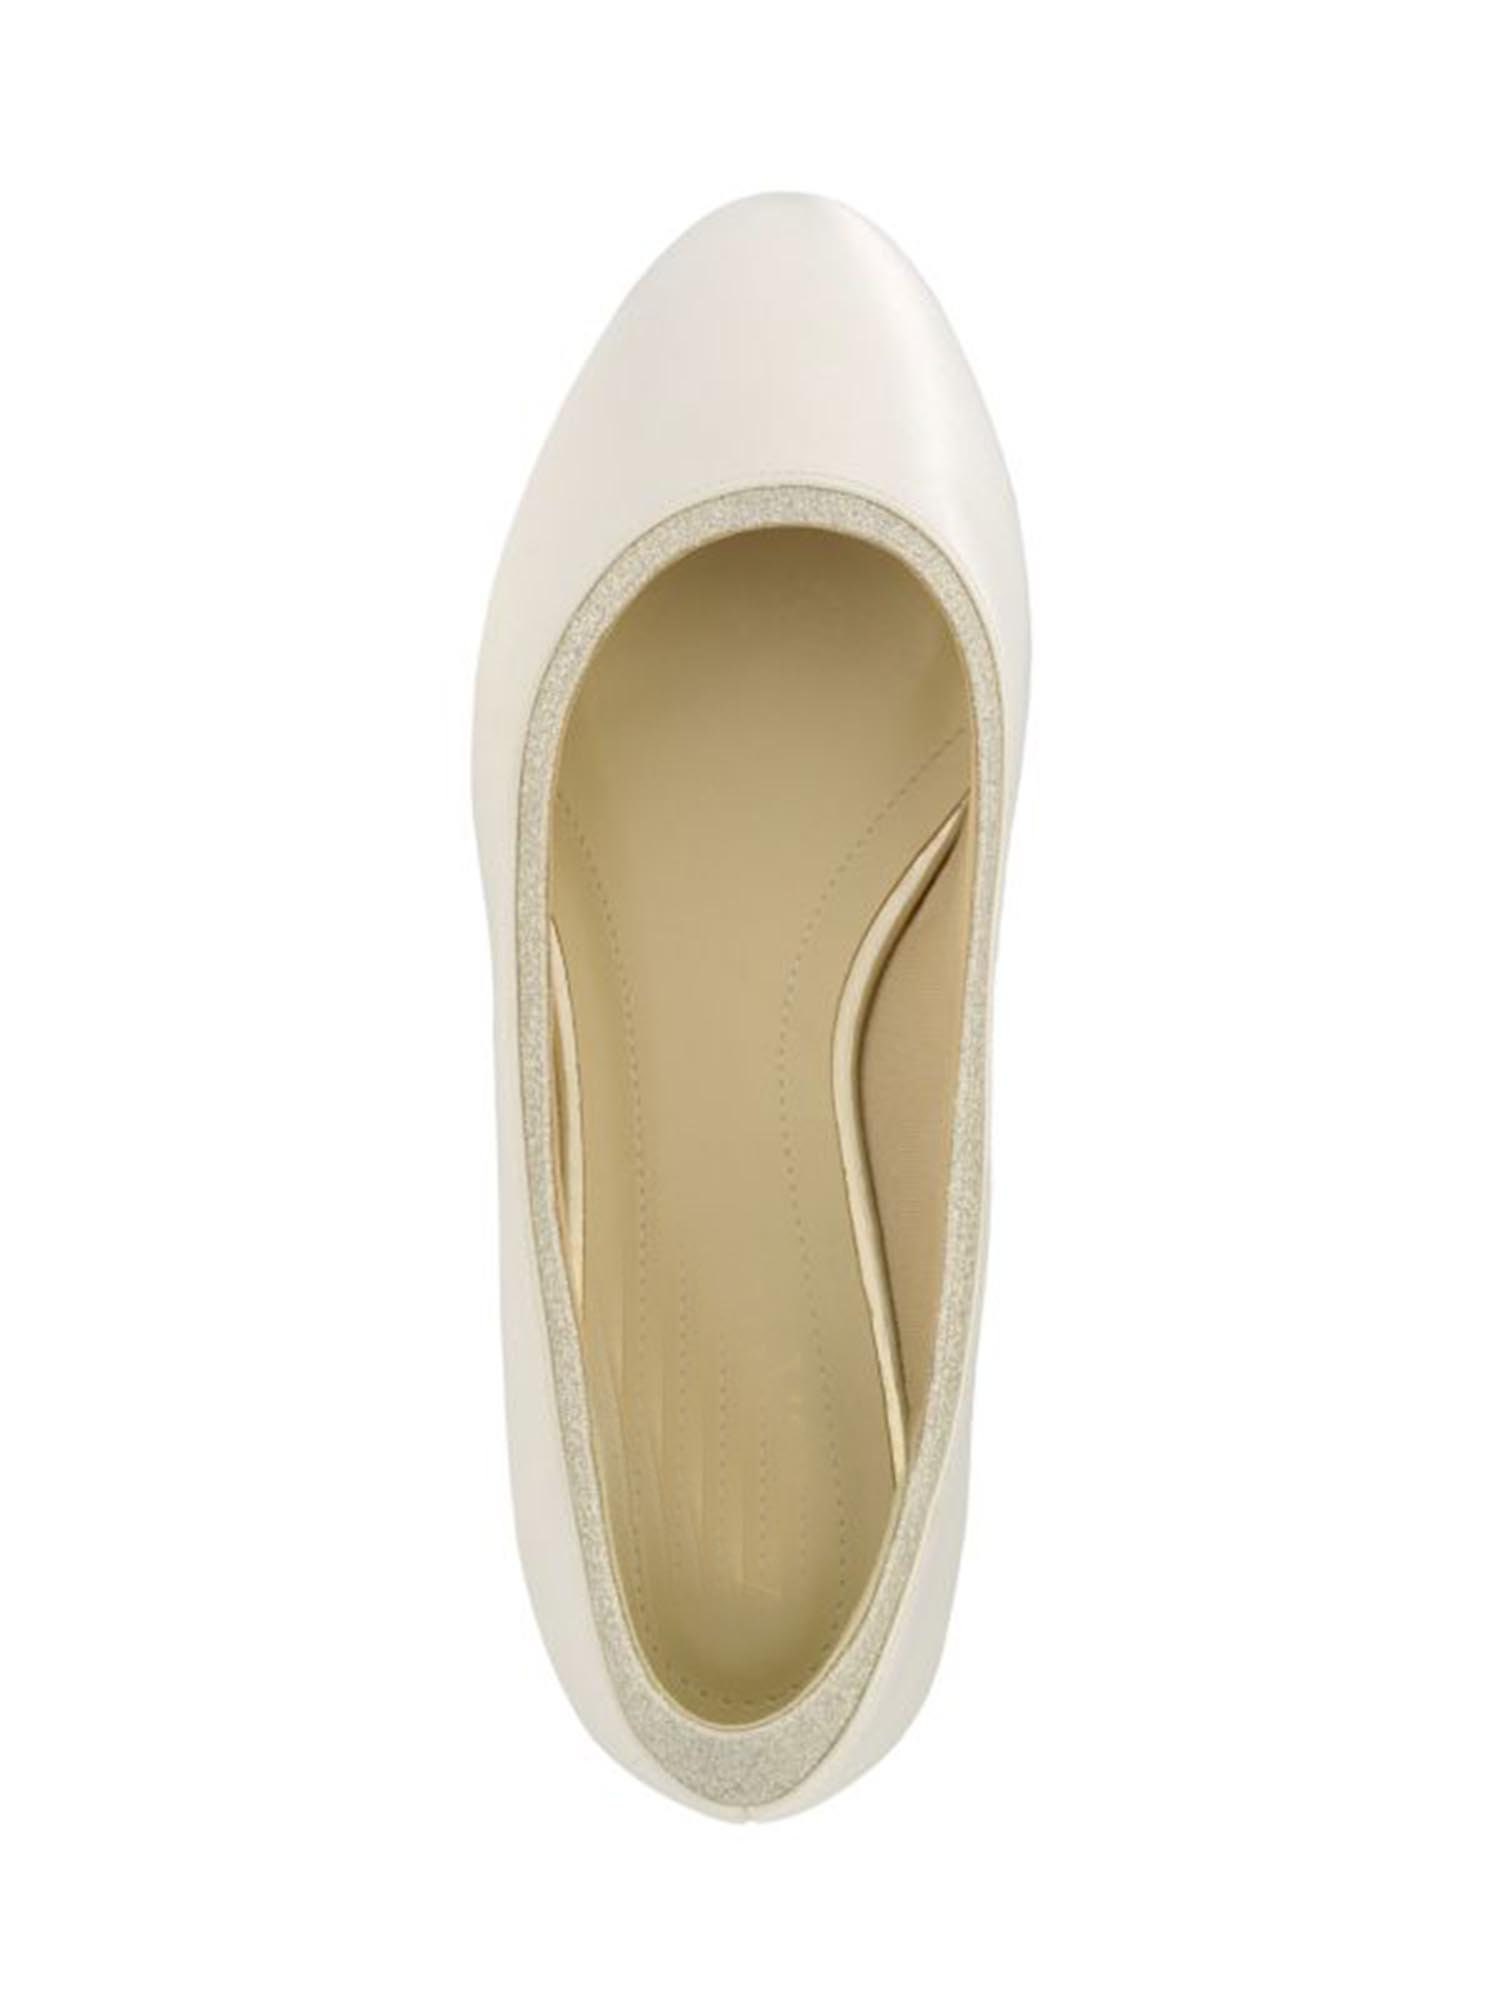 Ivory Satin Flat Wedding Shoes Ivory Bridal Low Heel Shoes - Etsy UK